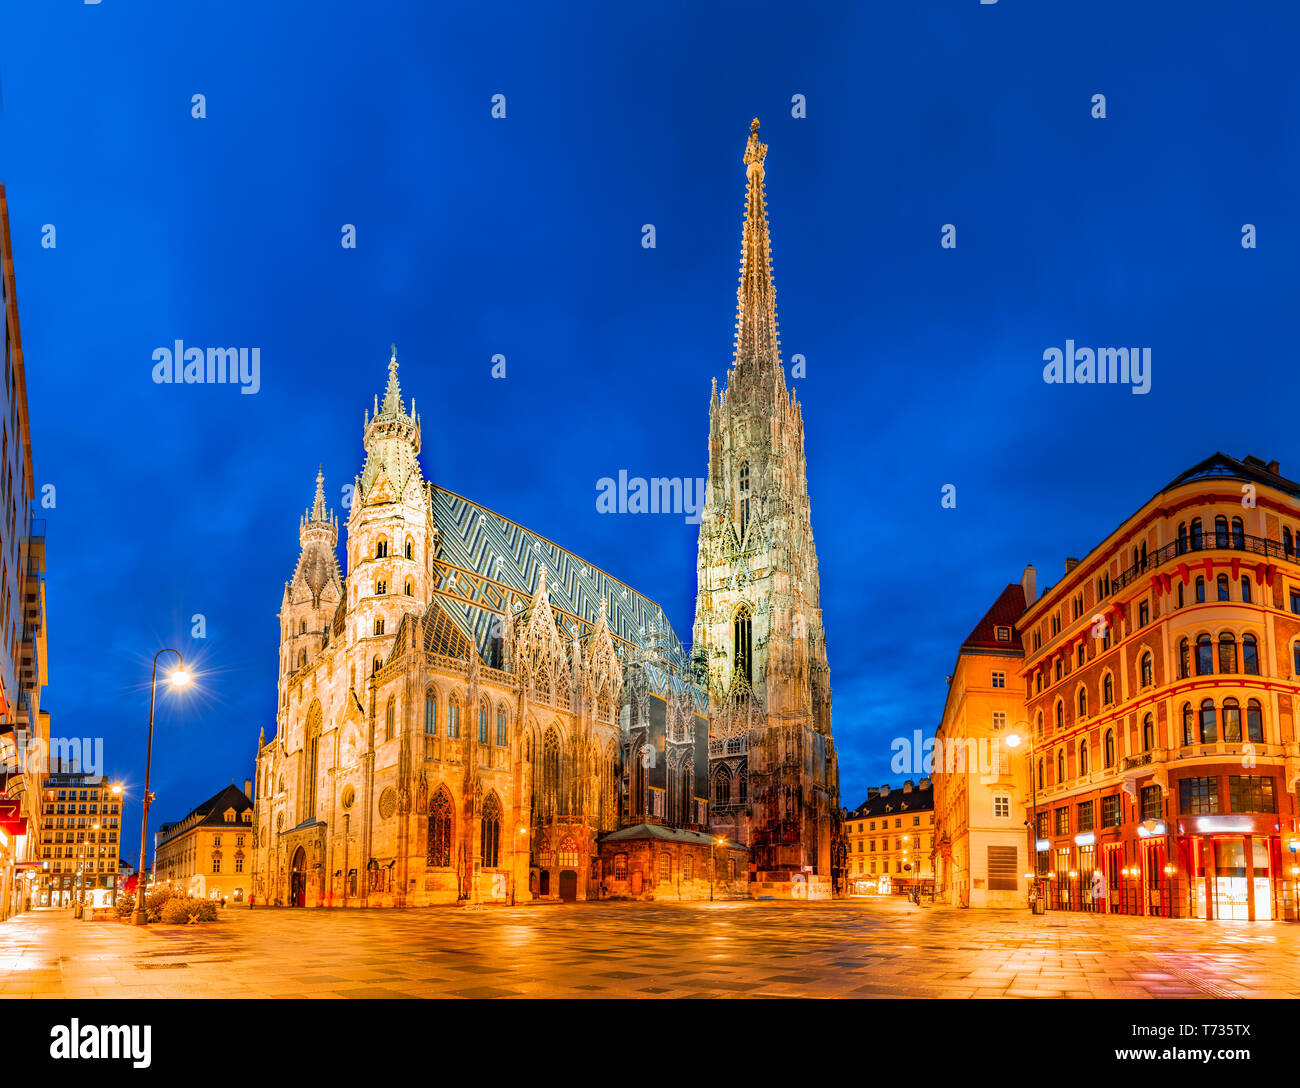 Wien, Österreich, Europa: Stephansdom Stephansdom, Stephansplatz oder früh am Morgen. Stockfoto